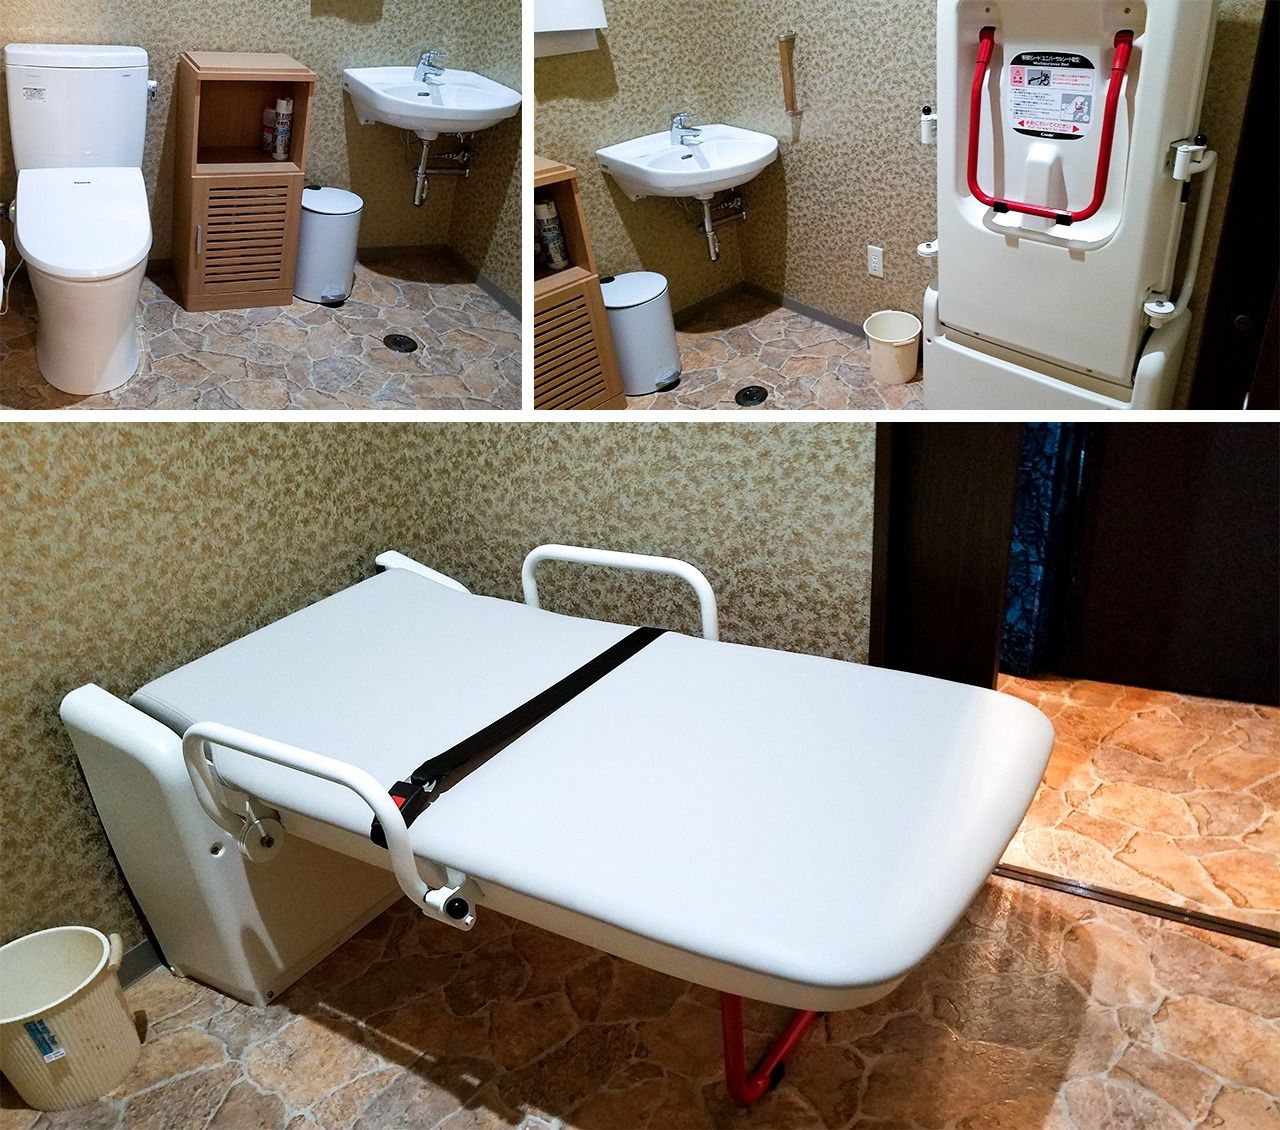 Toilettes spacieuses et faciles à utiliser même en fauteuil roulant. Table pliante pour changer les couches, pour les clients accompagnés.